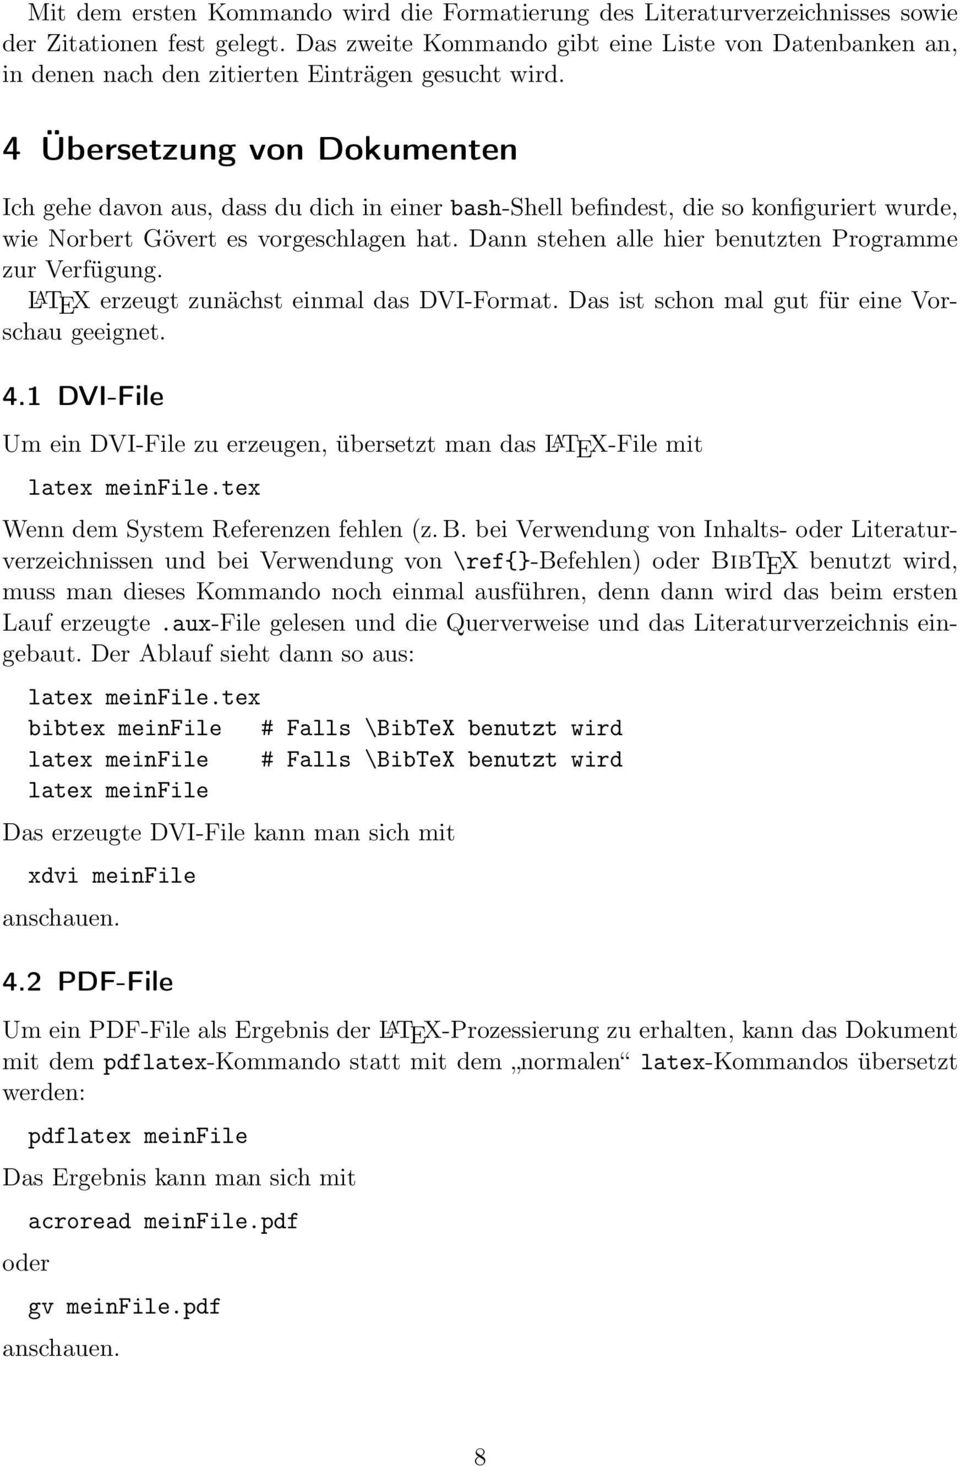 4 Übersetzung von Dokumenten Ich gehe davon aus, dass du dich in einer bash-shell befindest, die so konfiguriert wurde, wie Norbert Gövert es vorgeschlagen hat.